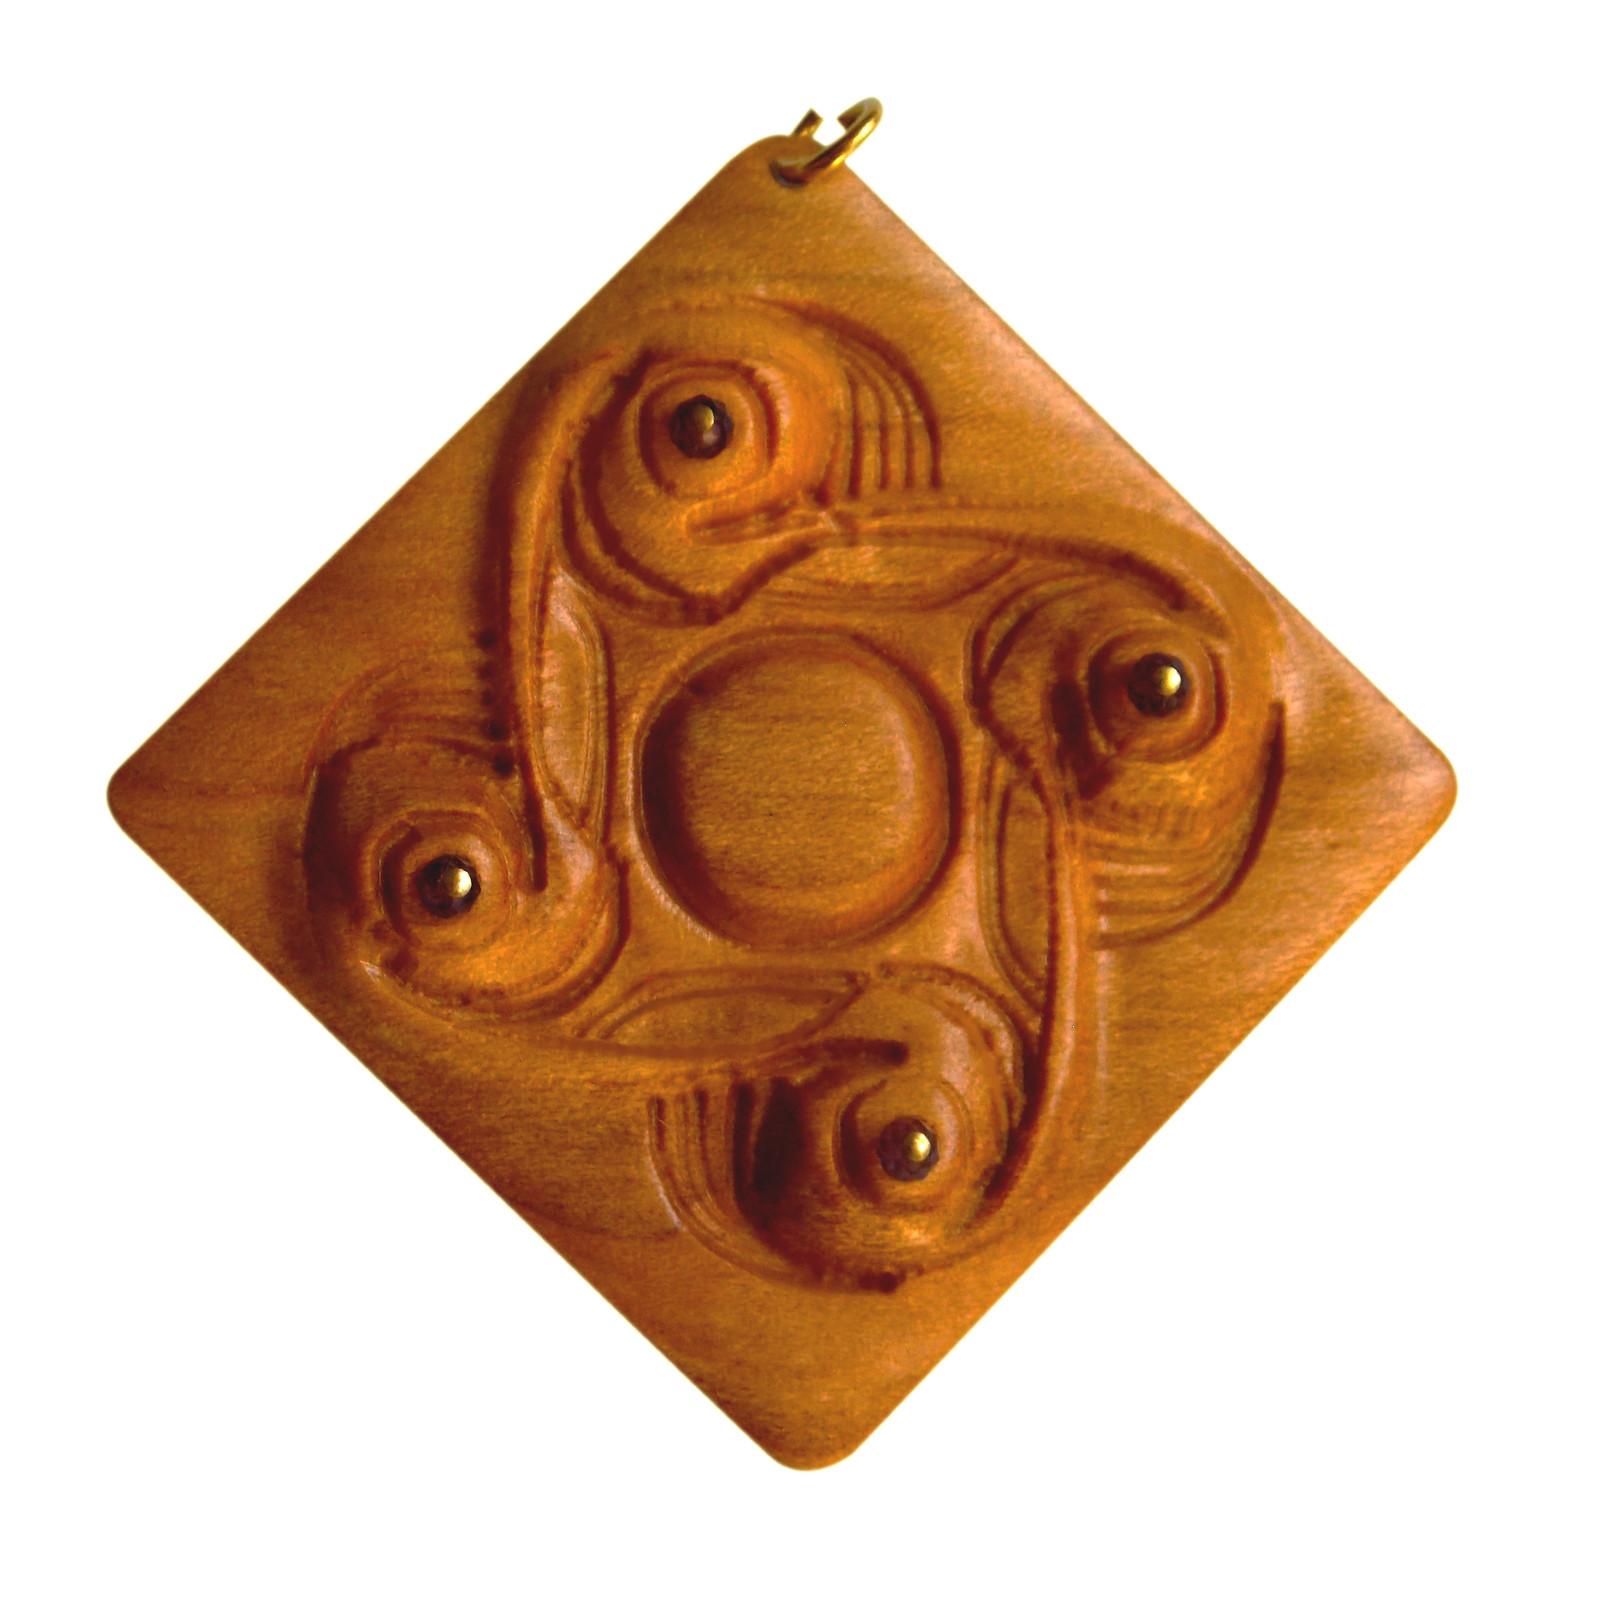 Material: lemn. Pietre semi-preţioase şi lanţ personalizat, doar la cerere.
